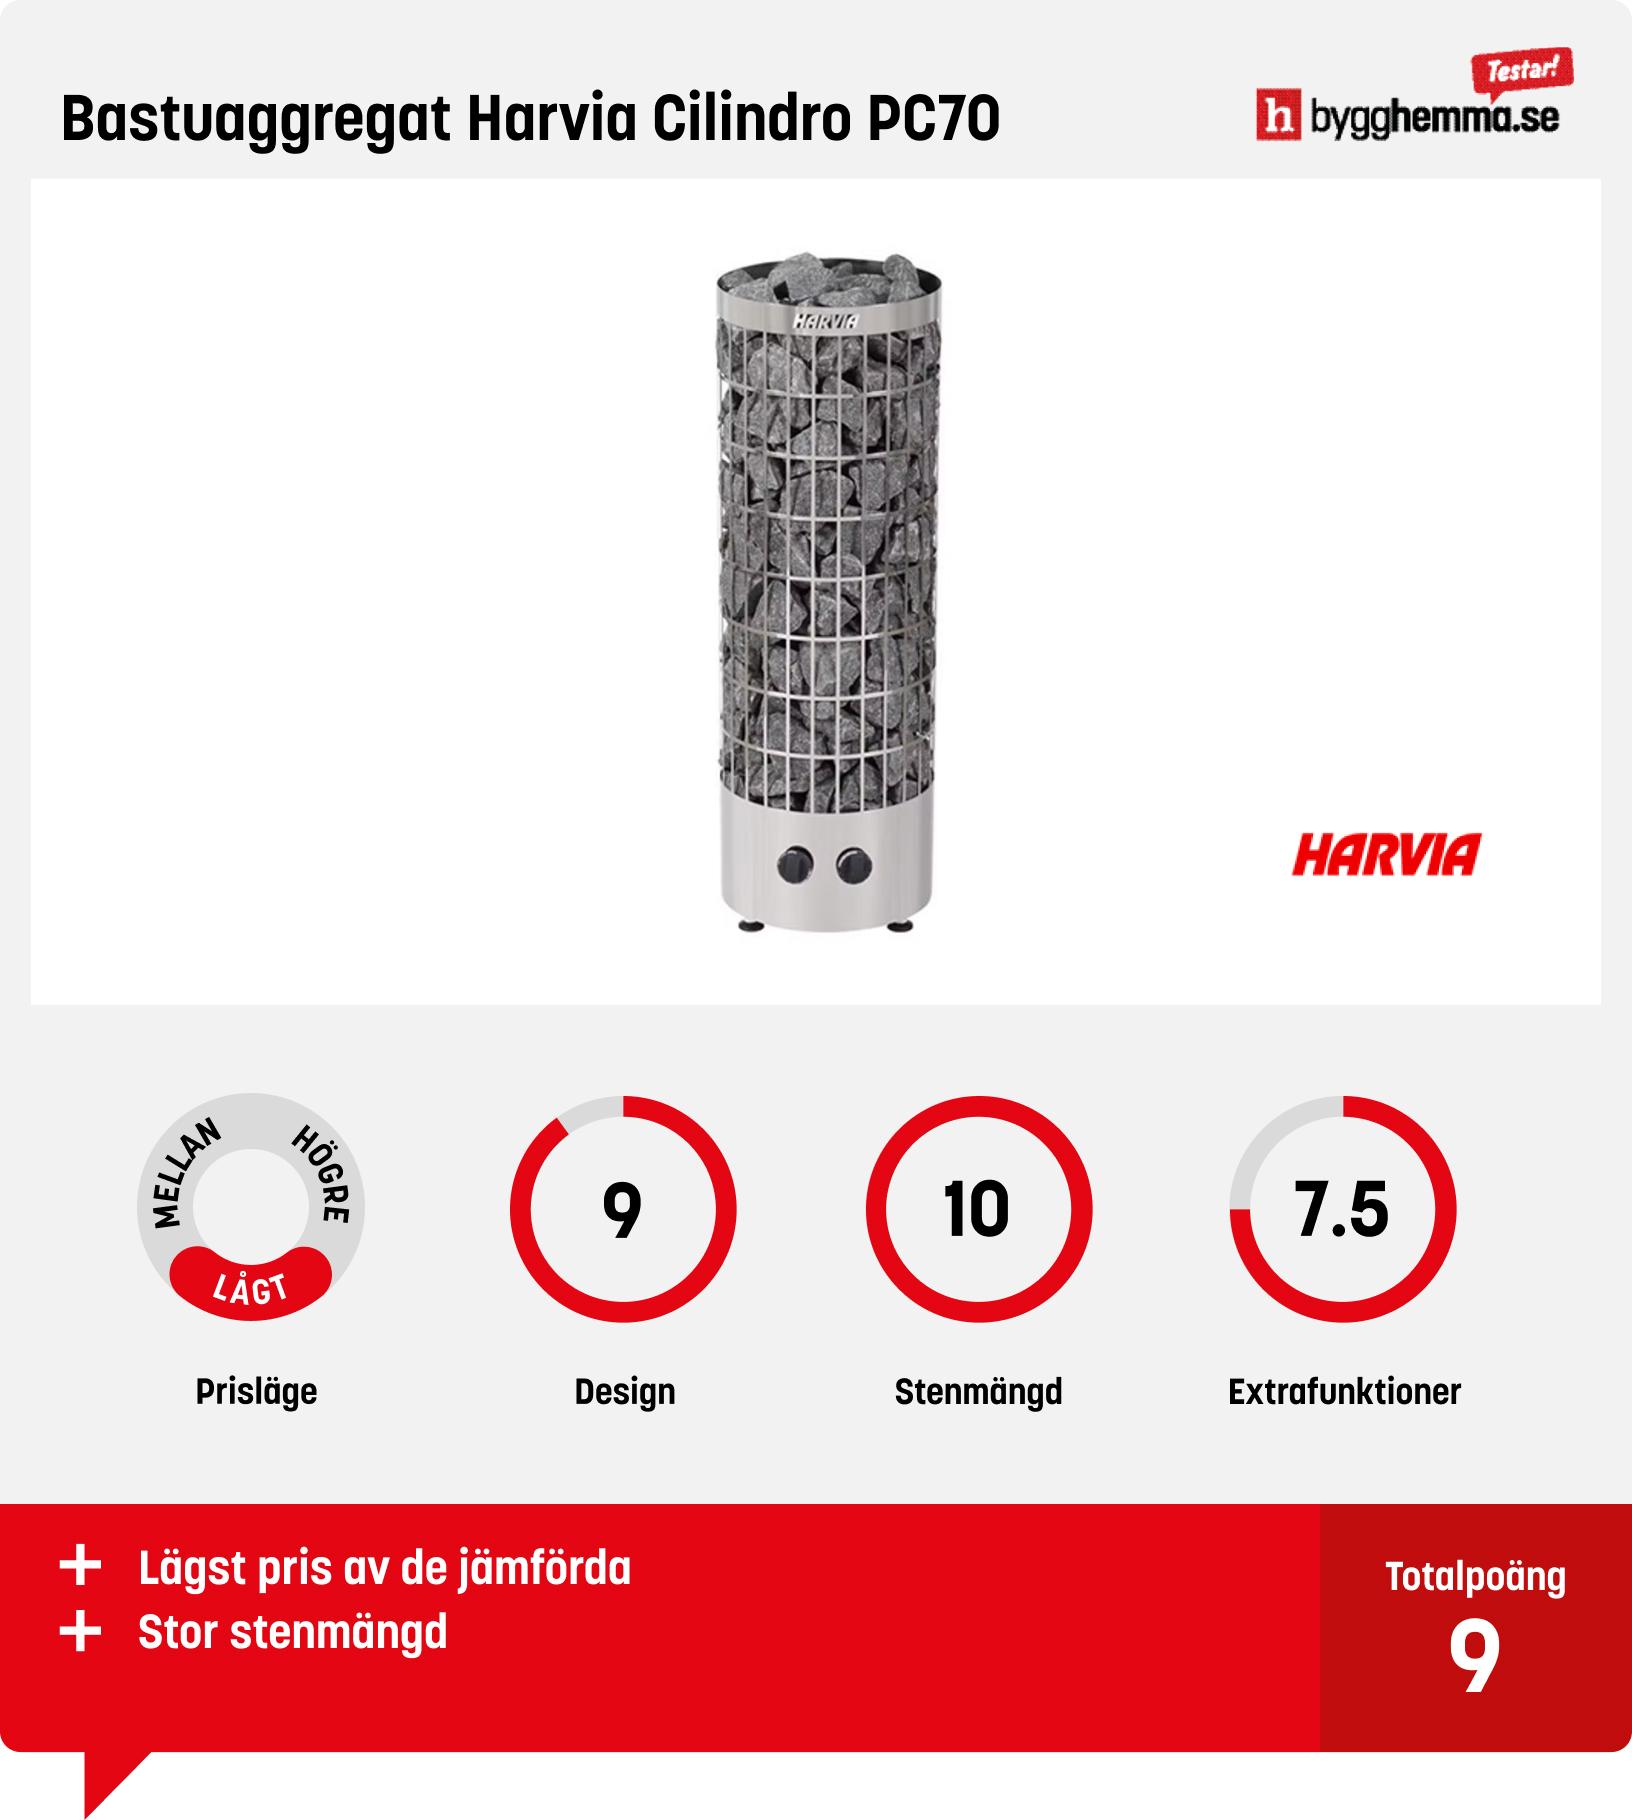 Bastuaggregat bäst i test - Bastuaggregat Harvia Cilindro PC70